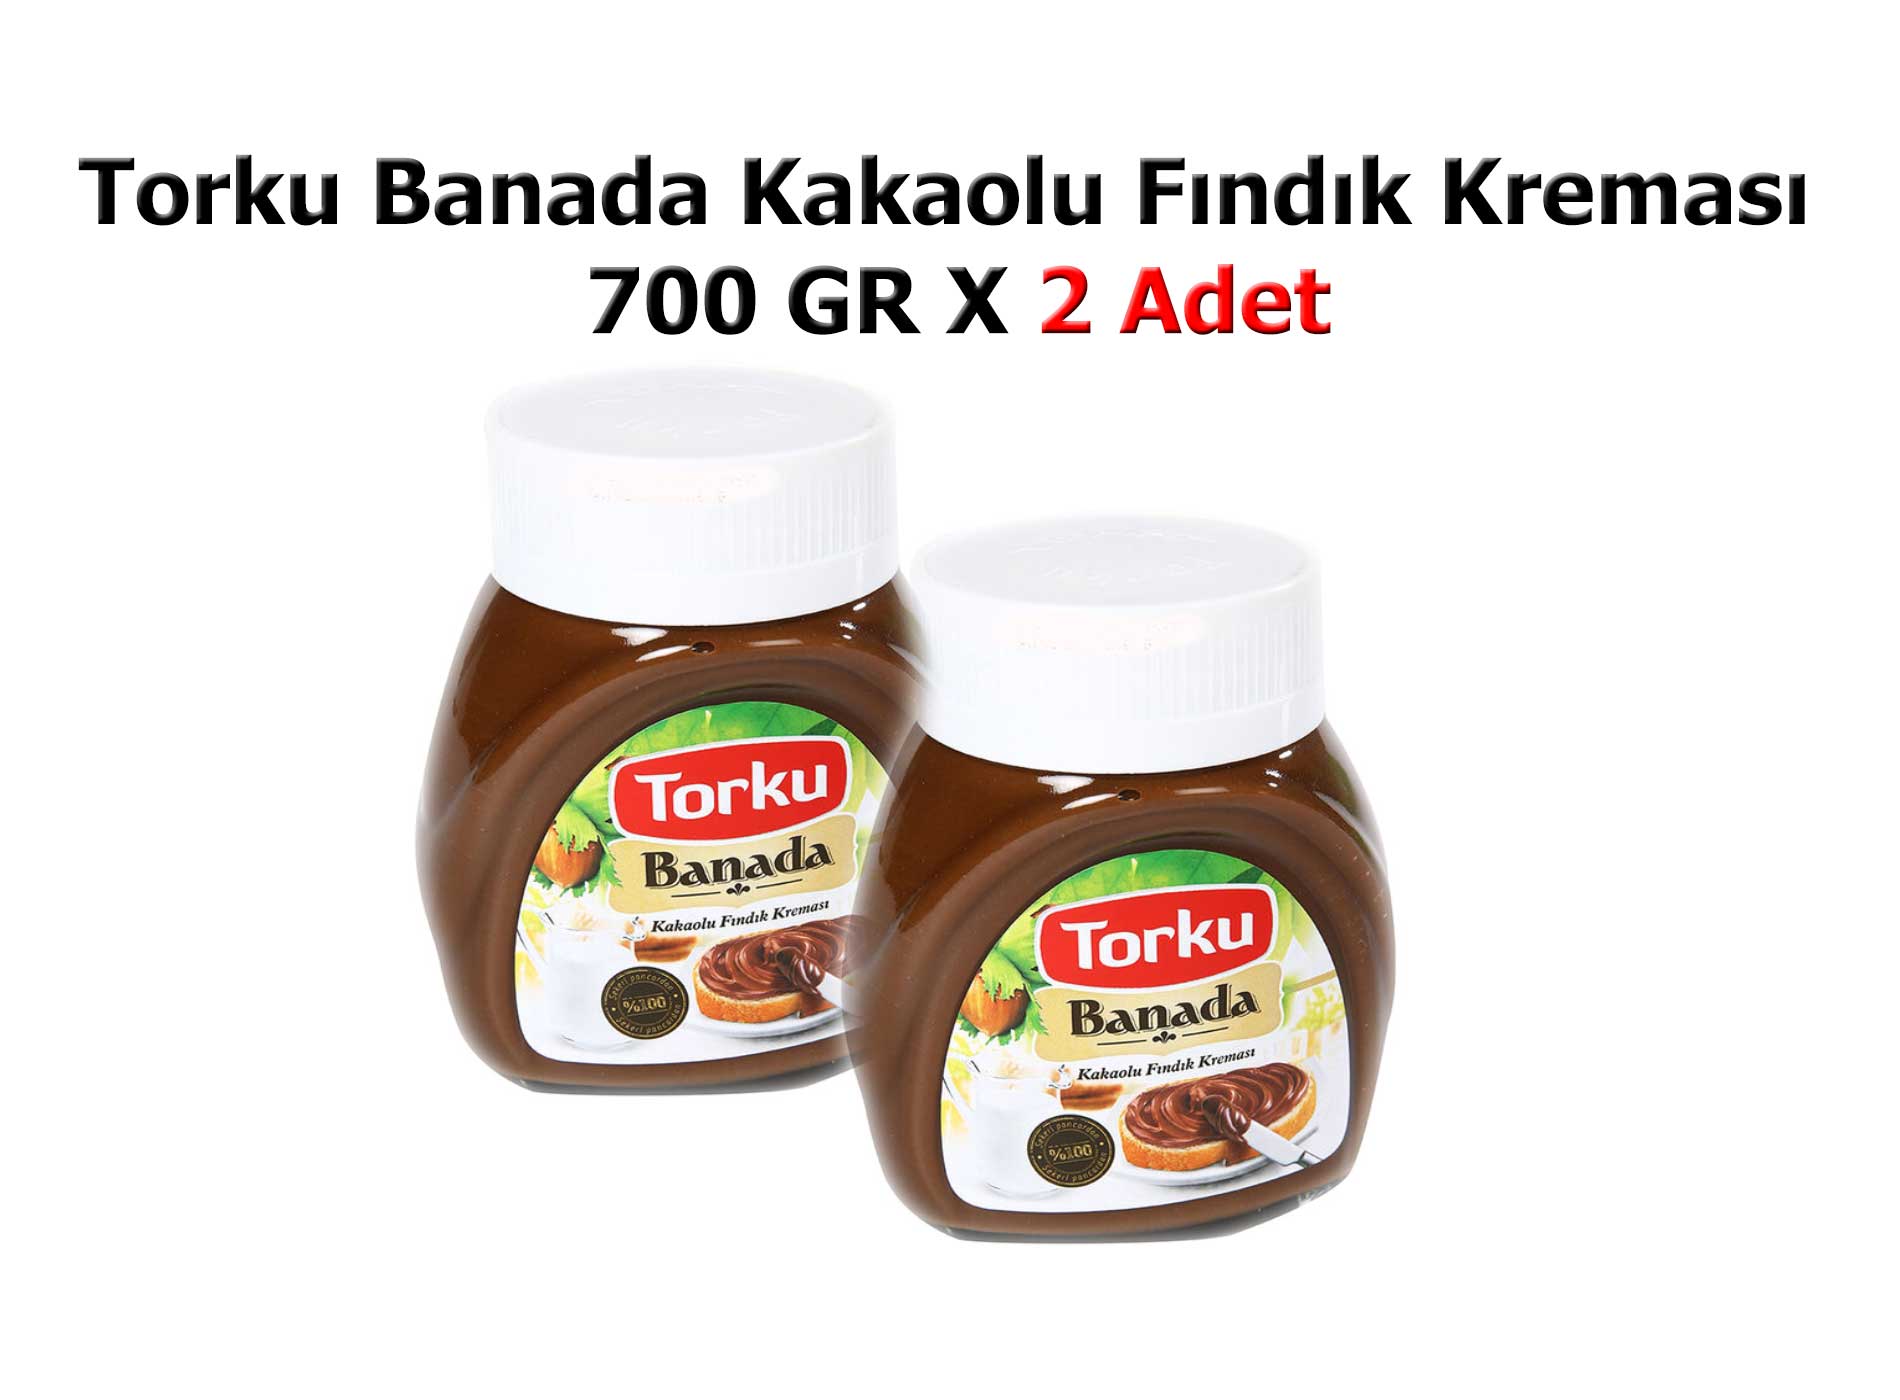 Torku Banada Kakaolu Fındık Kreması 700 GR X 2 Adet